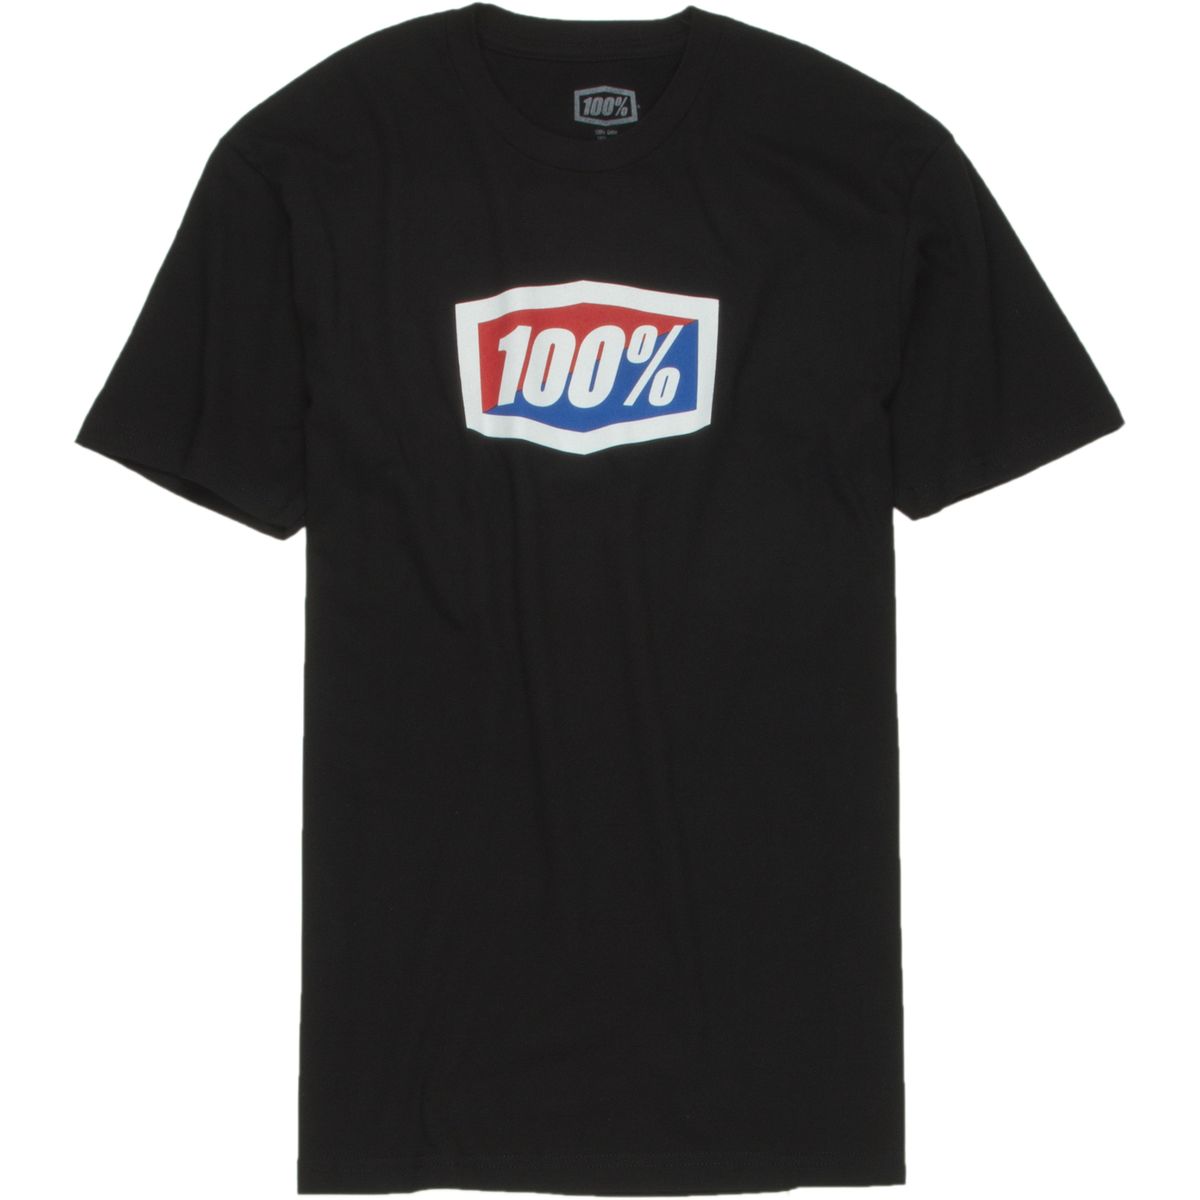 100% Official T-Shirt - Short Sleeve - Men's